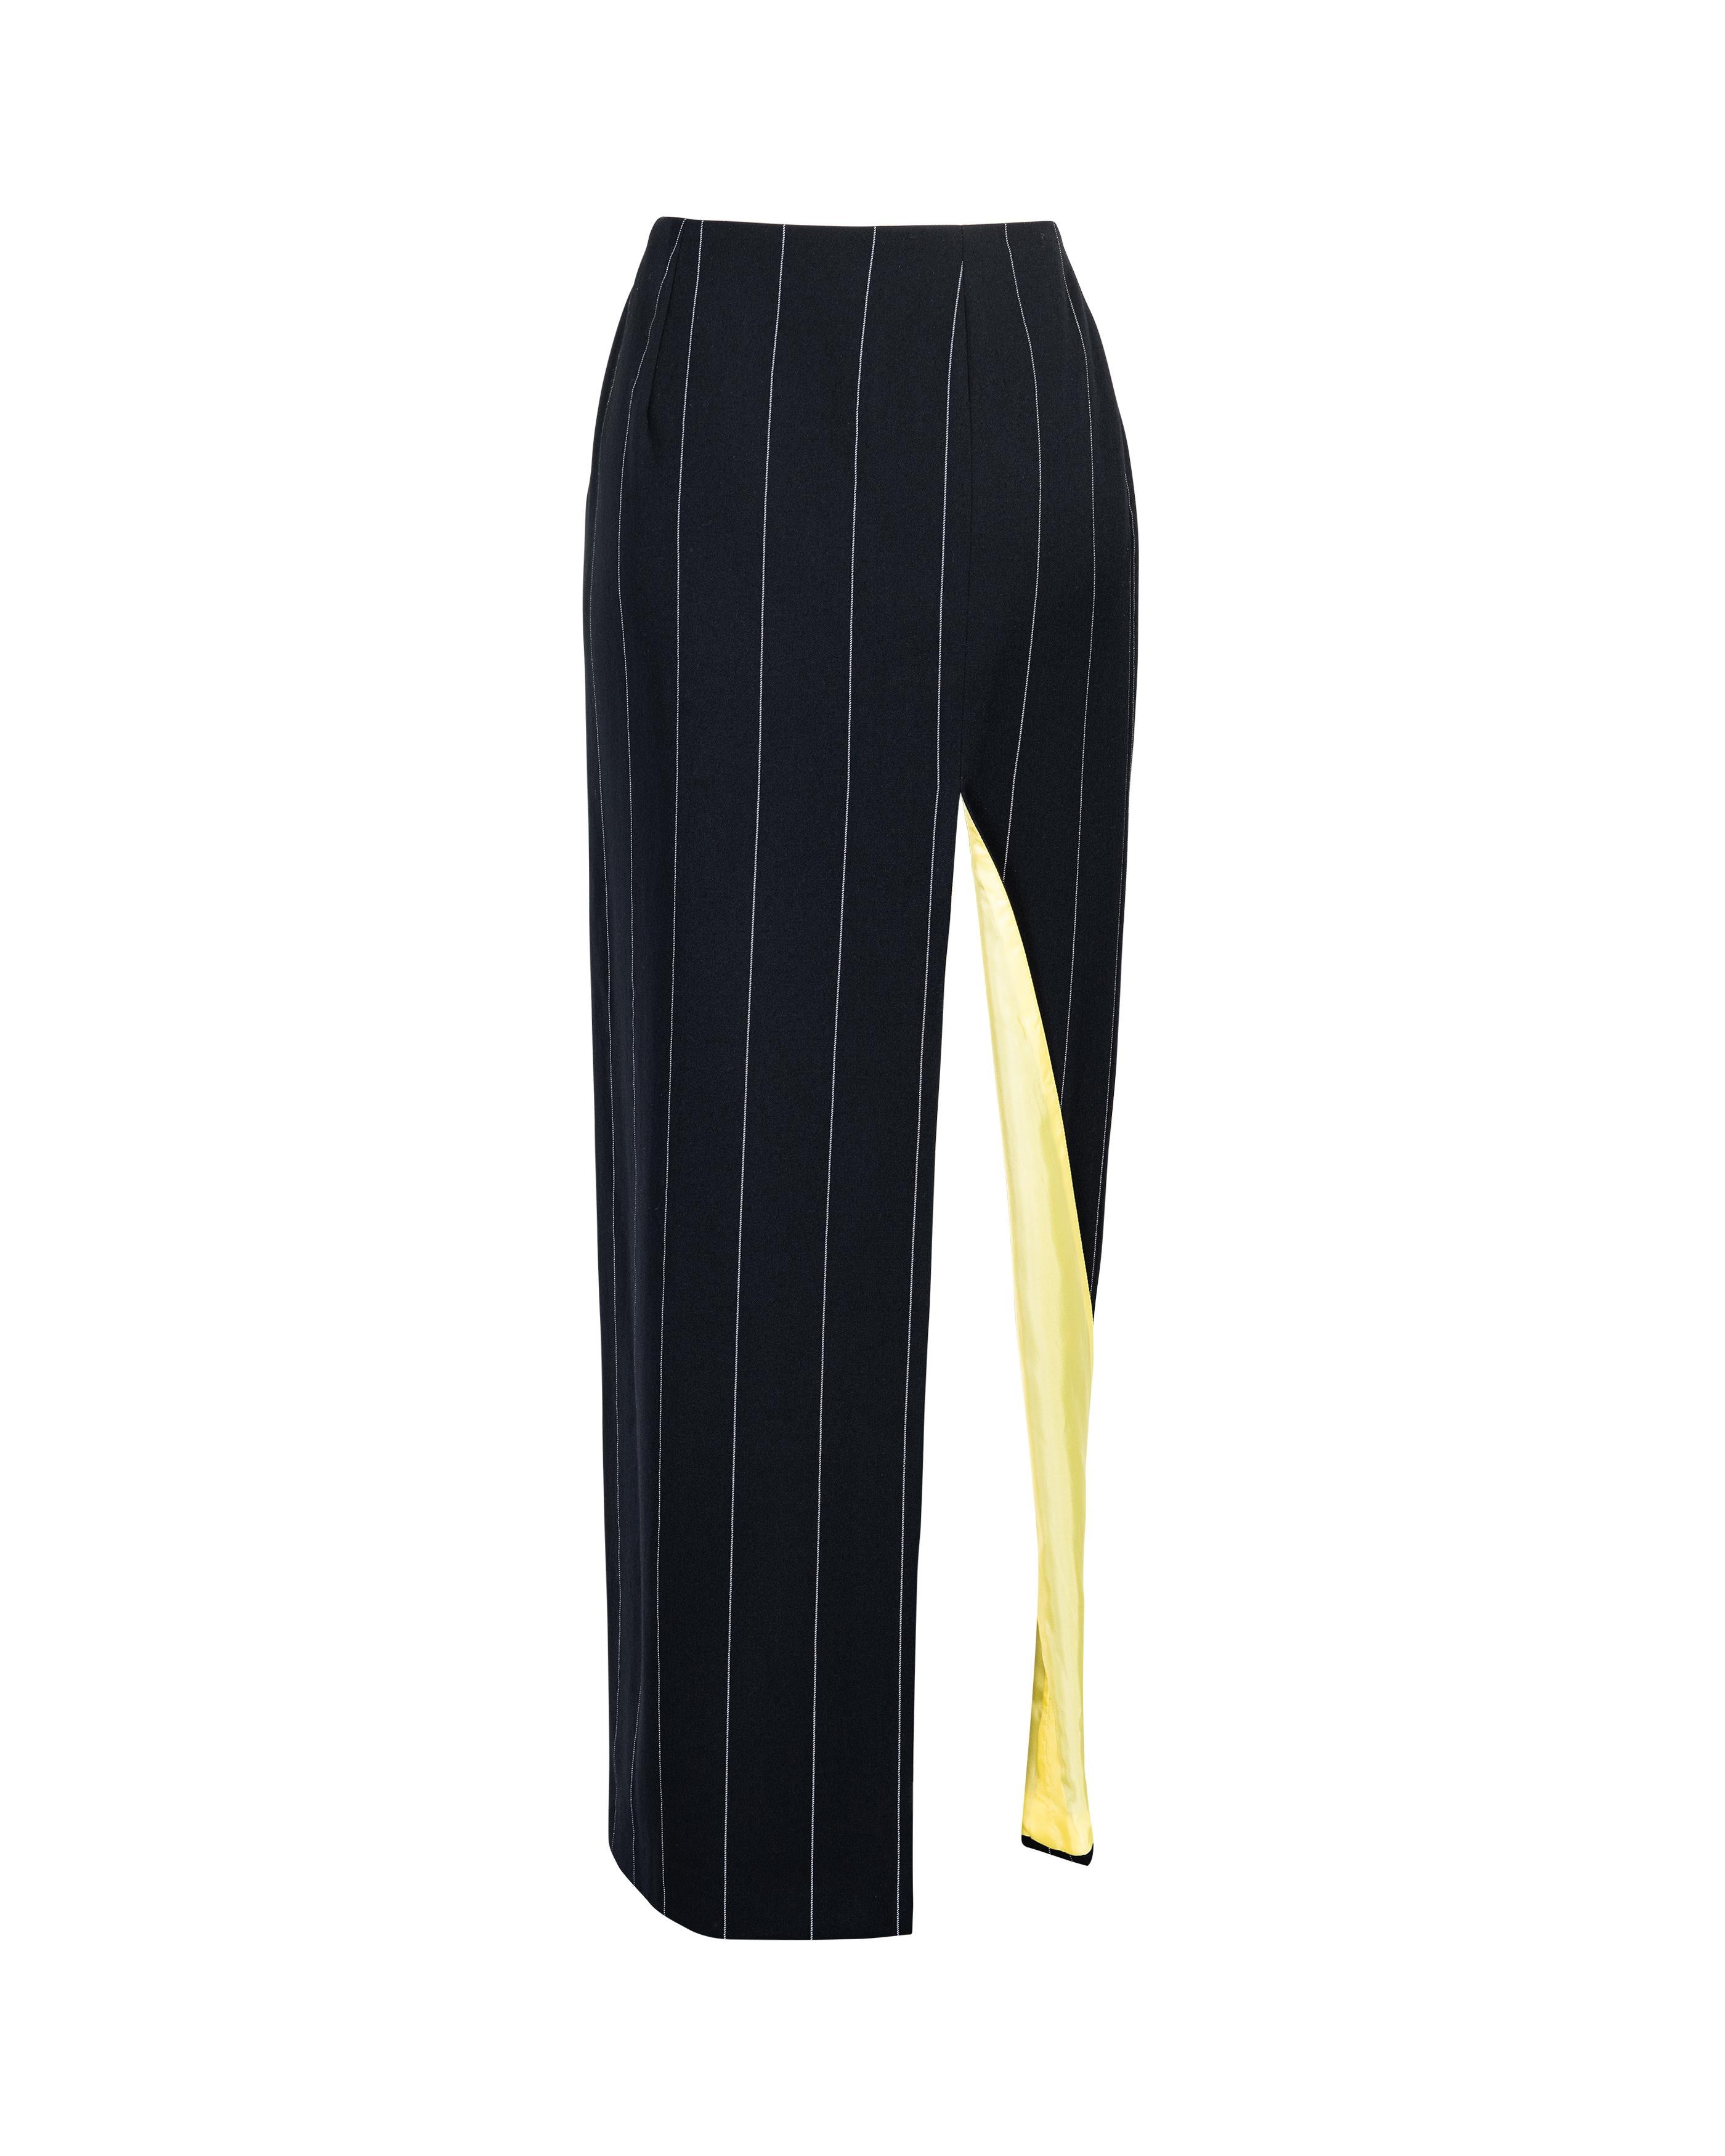 A/W 1998 Gianni Versace Deep Navy Pinstripe Skirt 1